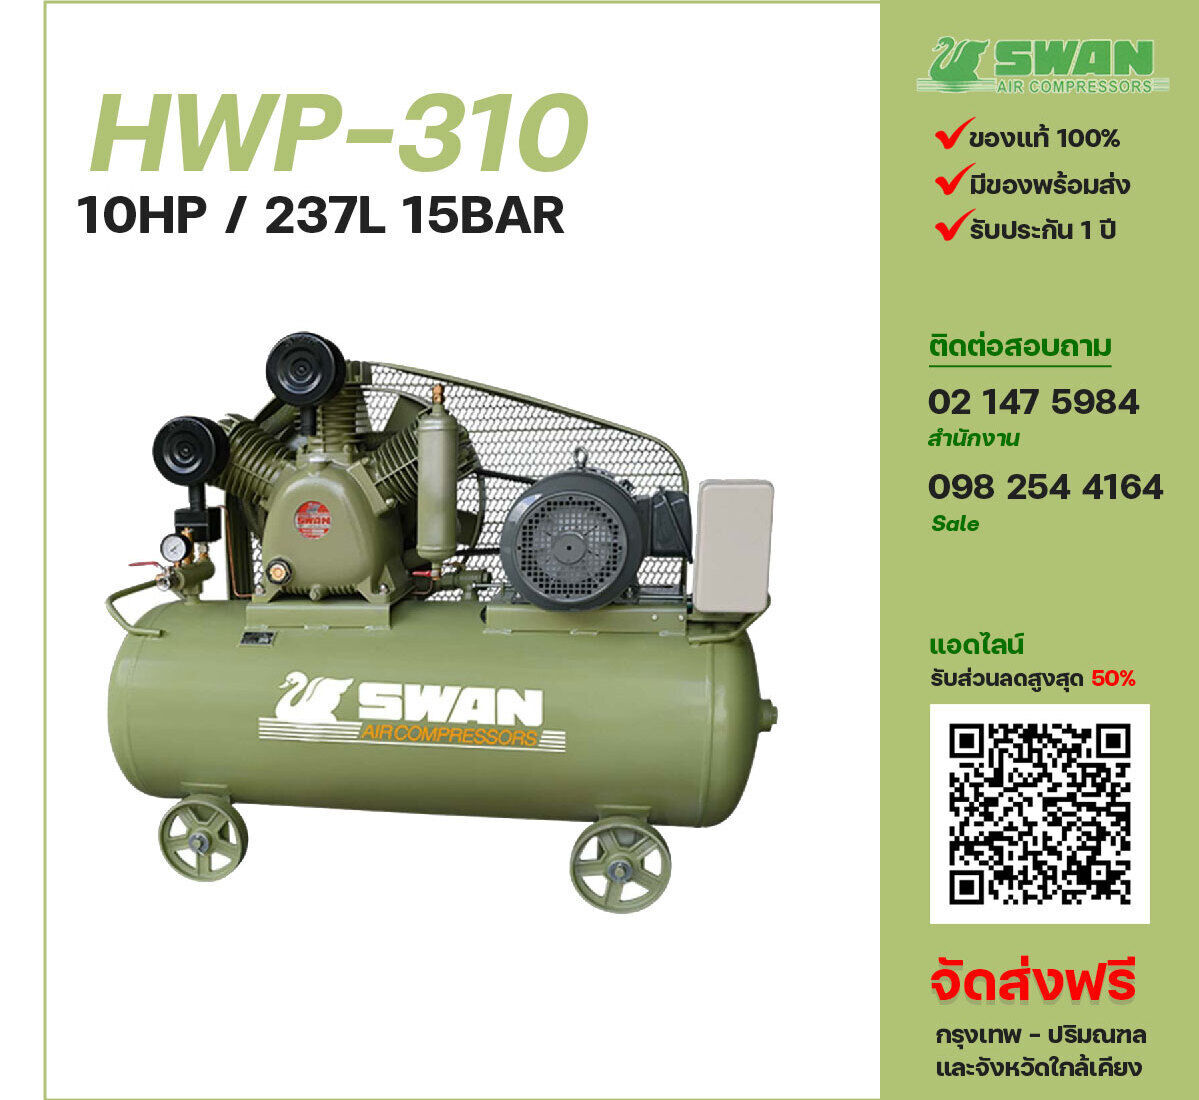 ปั๊มลมสวอนแรงดันสูง SWAN HWP-310 380V ปั๊มลมลูกสูบ ขนาด 3 สูบ 10 แรงม้า 237 ลิตร SWAN พร้อมมอเตอร์ ไฟ 380V ส่งฟรี กรุงเทพฯ-ปริมณฑล รับประกัน 1 ปี
